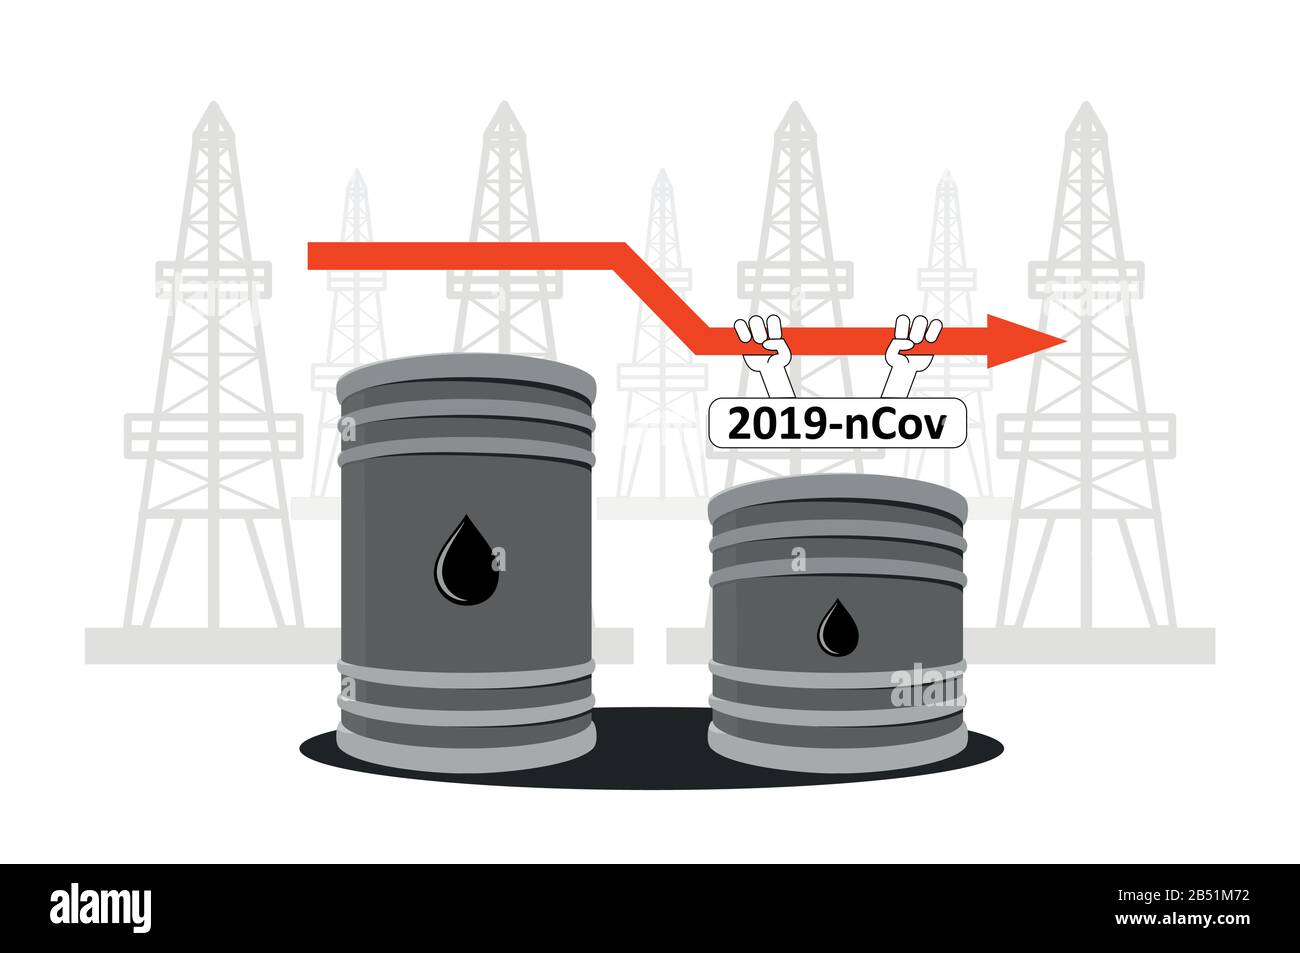 Verringerte Ölförderung durch Coronavirus, verringerter Ölverbrauch durch 2019-nCov, Kovid-2019. Ölfässer vor dem Hintergrund von Ölständen, dem Stock Vektor